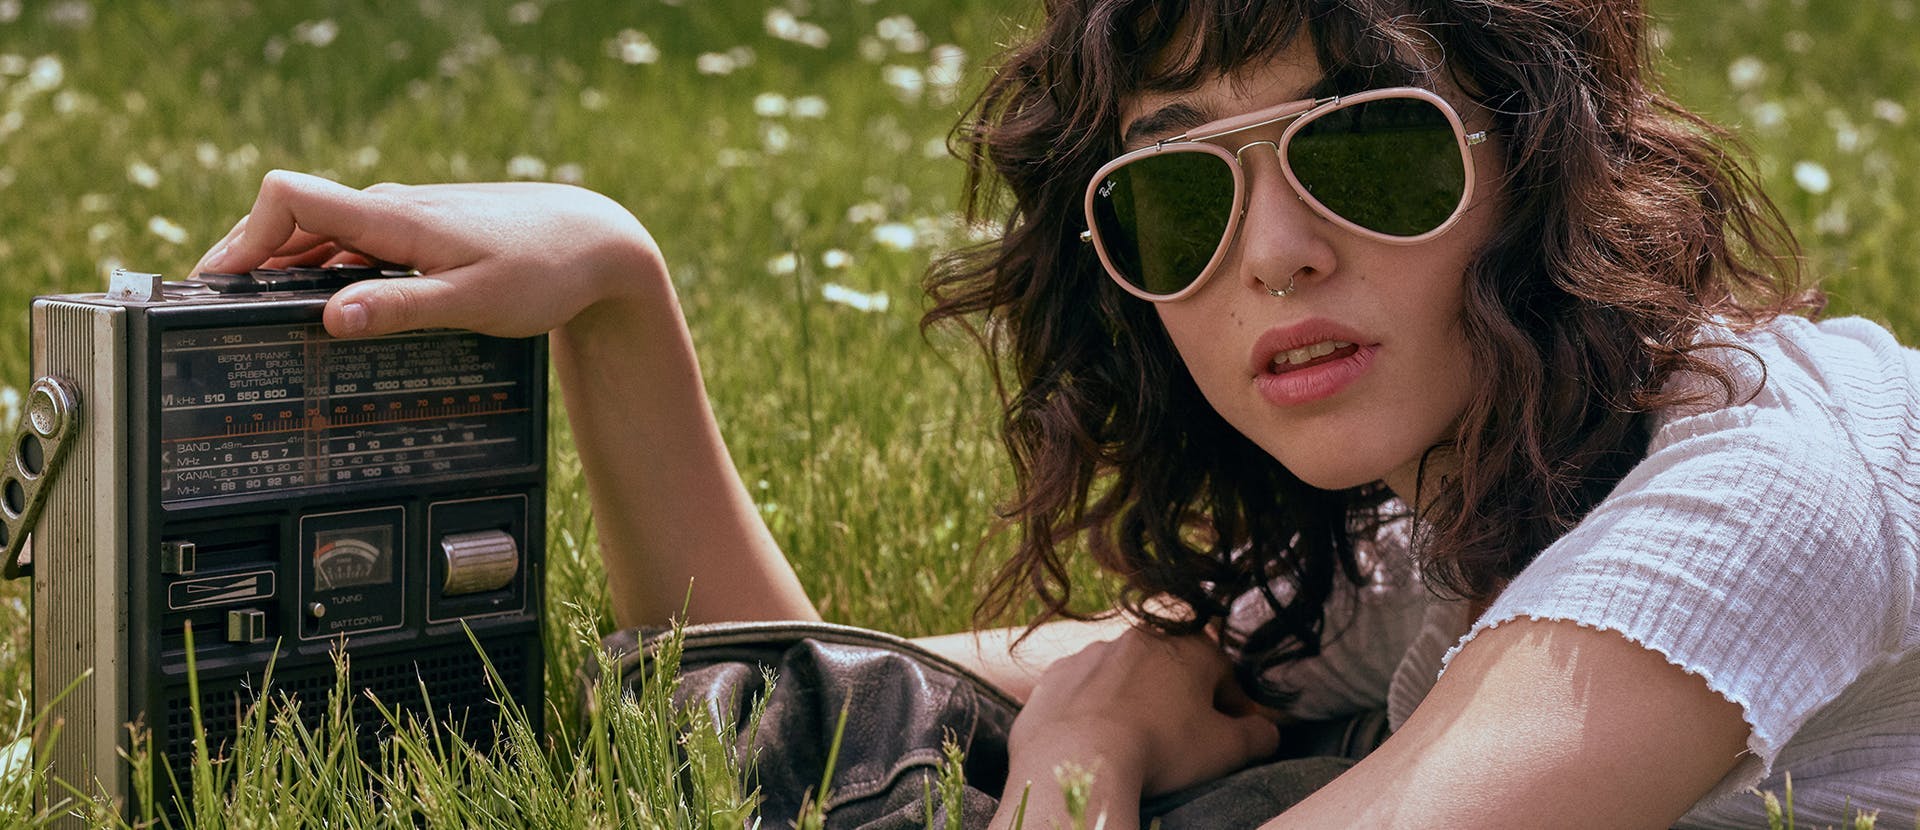 grass plant accessories sunglasses accessory person human